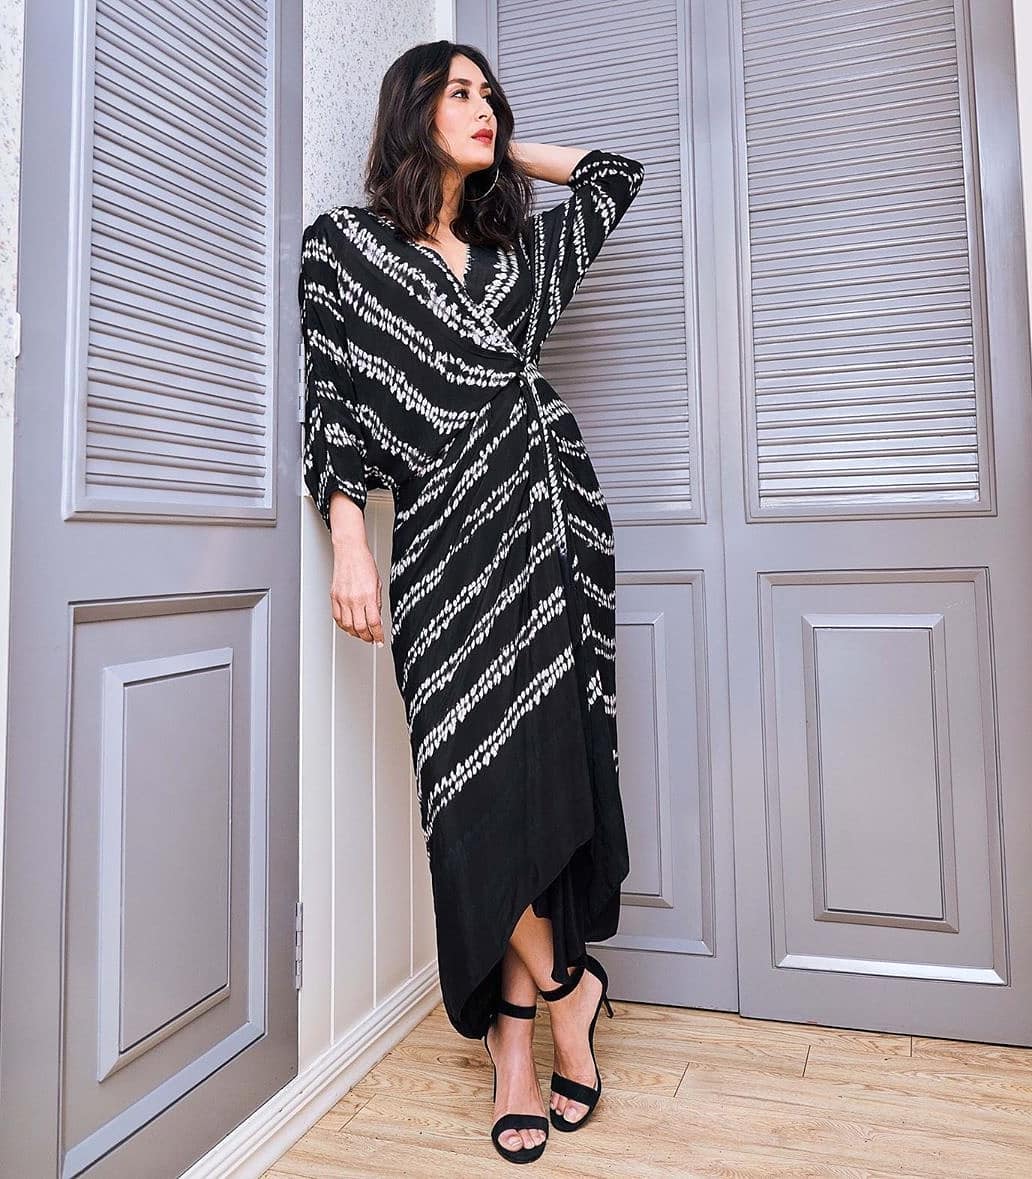 Kareena Kapoor Latest Fashion Outing